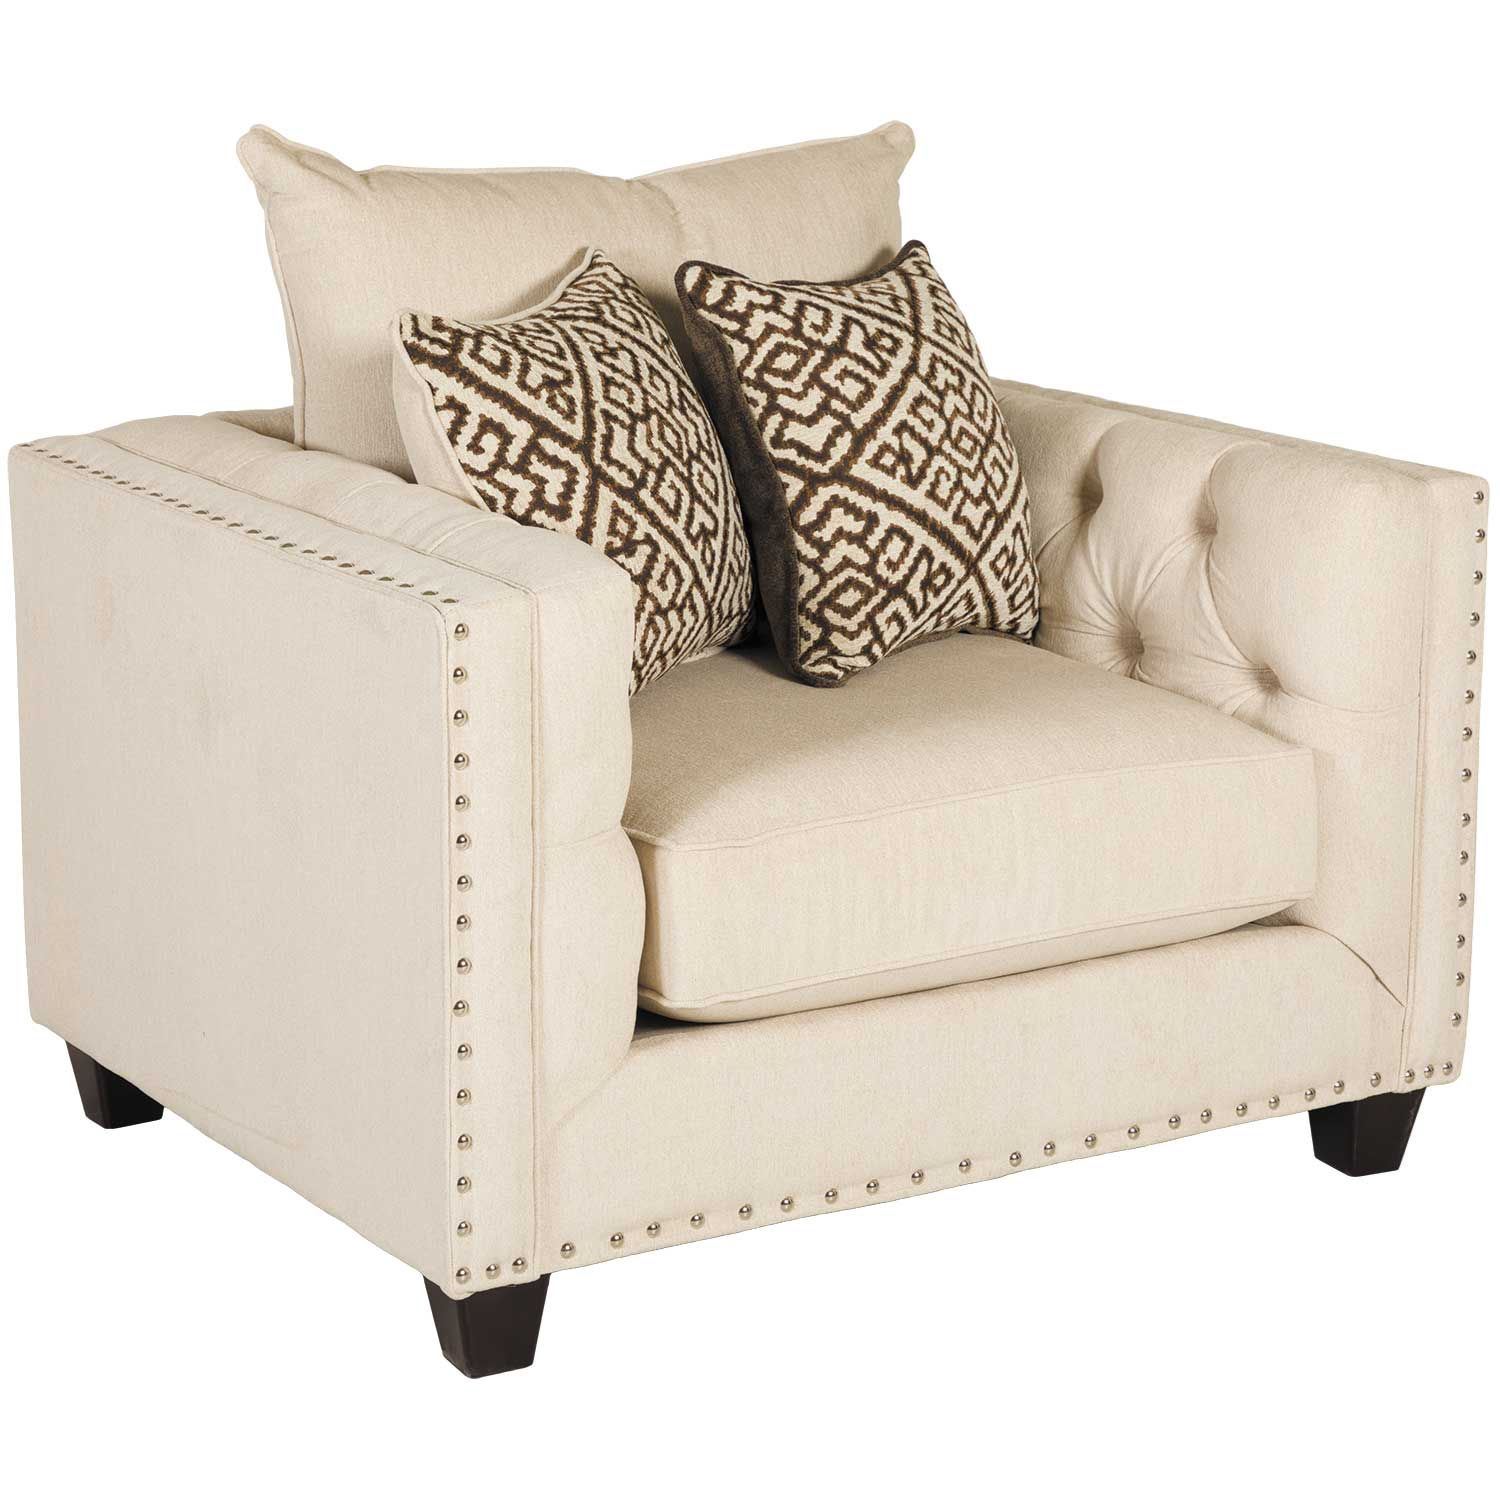 Juliana Pearl Chair D1 339c Blue Mountain Furniture Afw Com